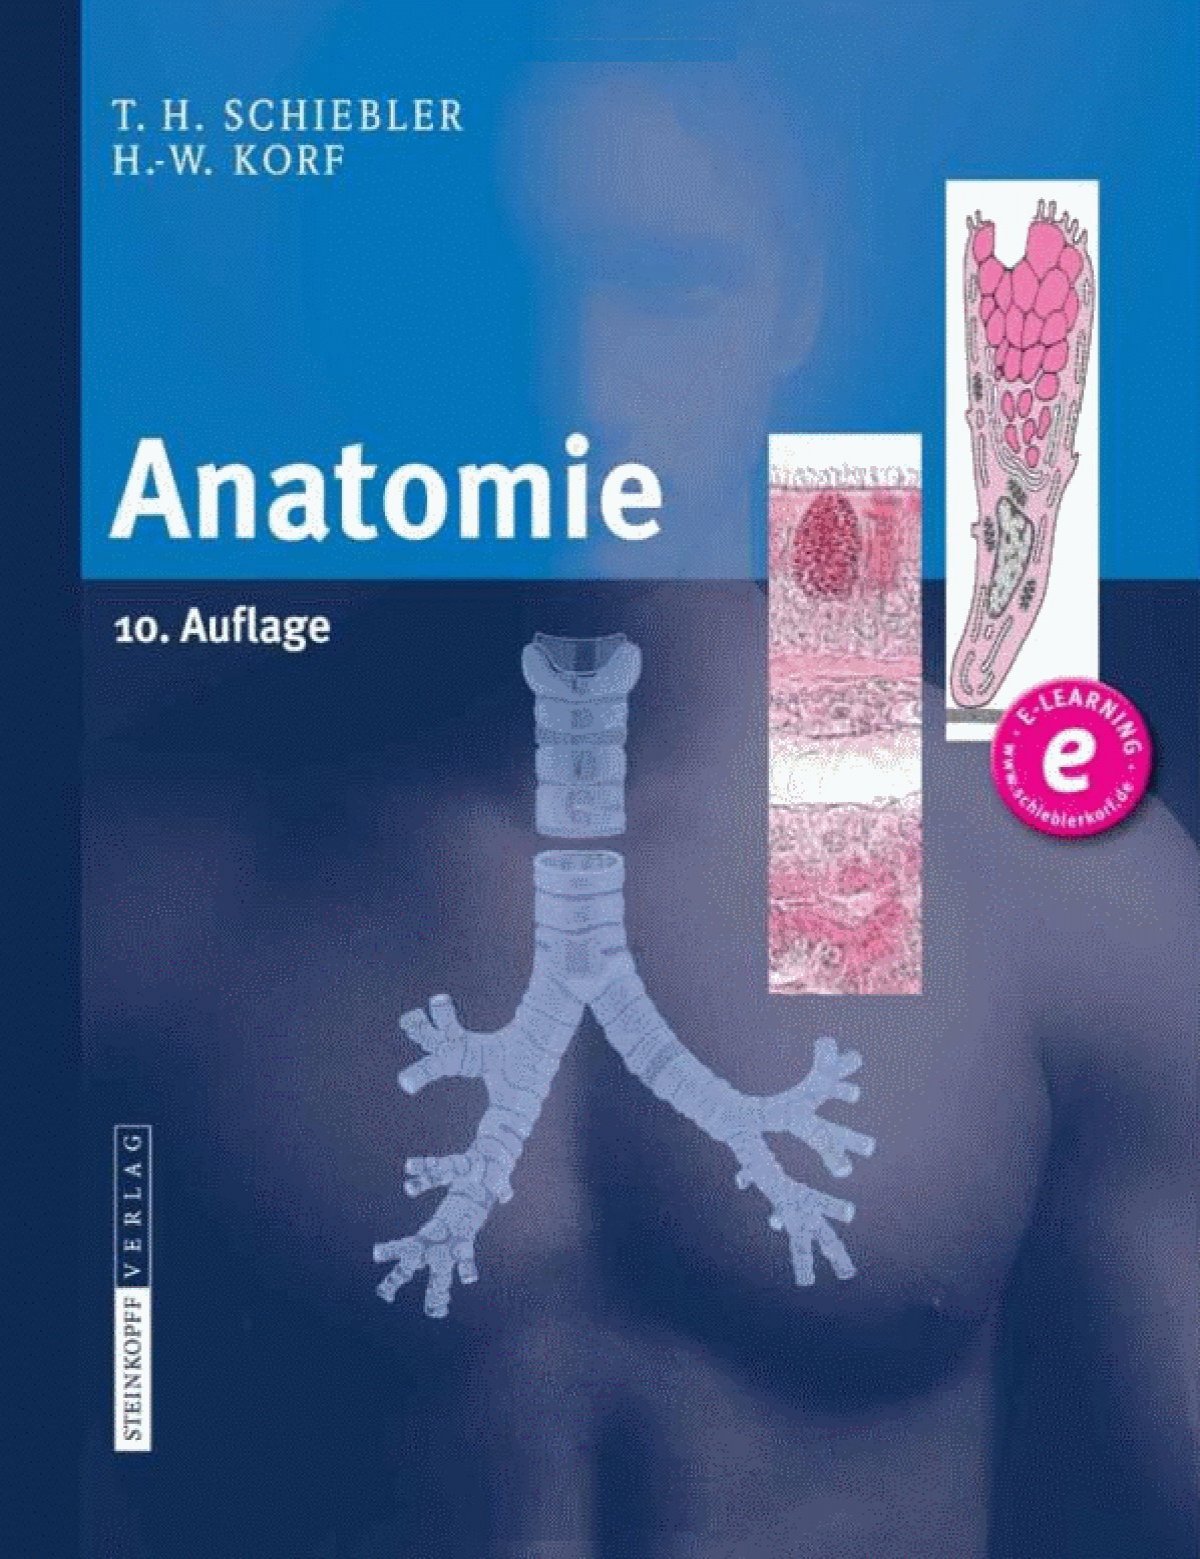 Schiebler & Korf - Anatomie 10th ed. 2008.pdf